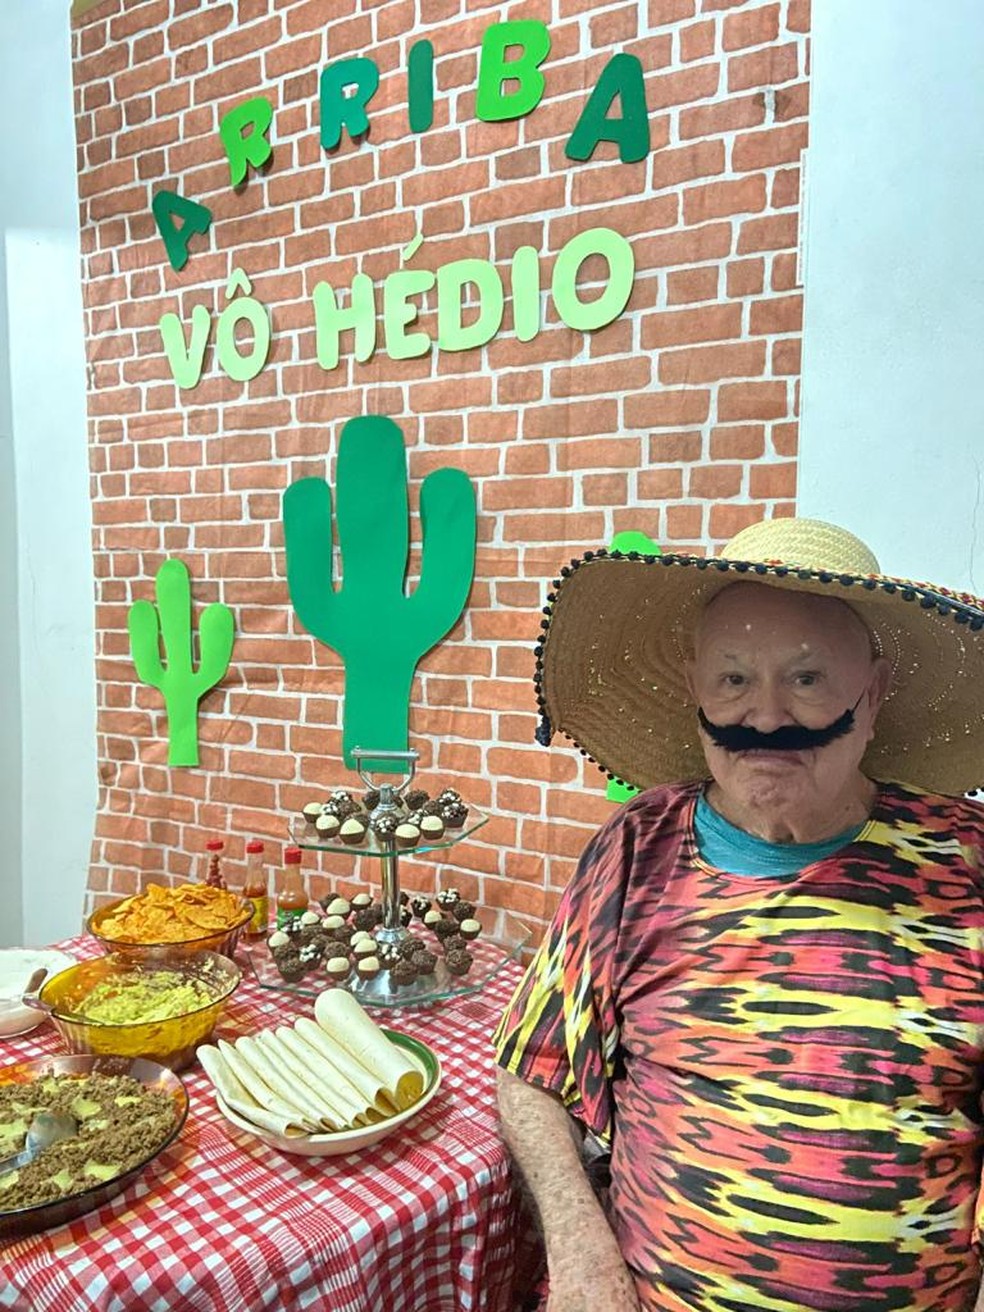 Hédio durante festa temática mexicana — Foto: Ana Cristina Nunes Souza/Arquivo pessoal